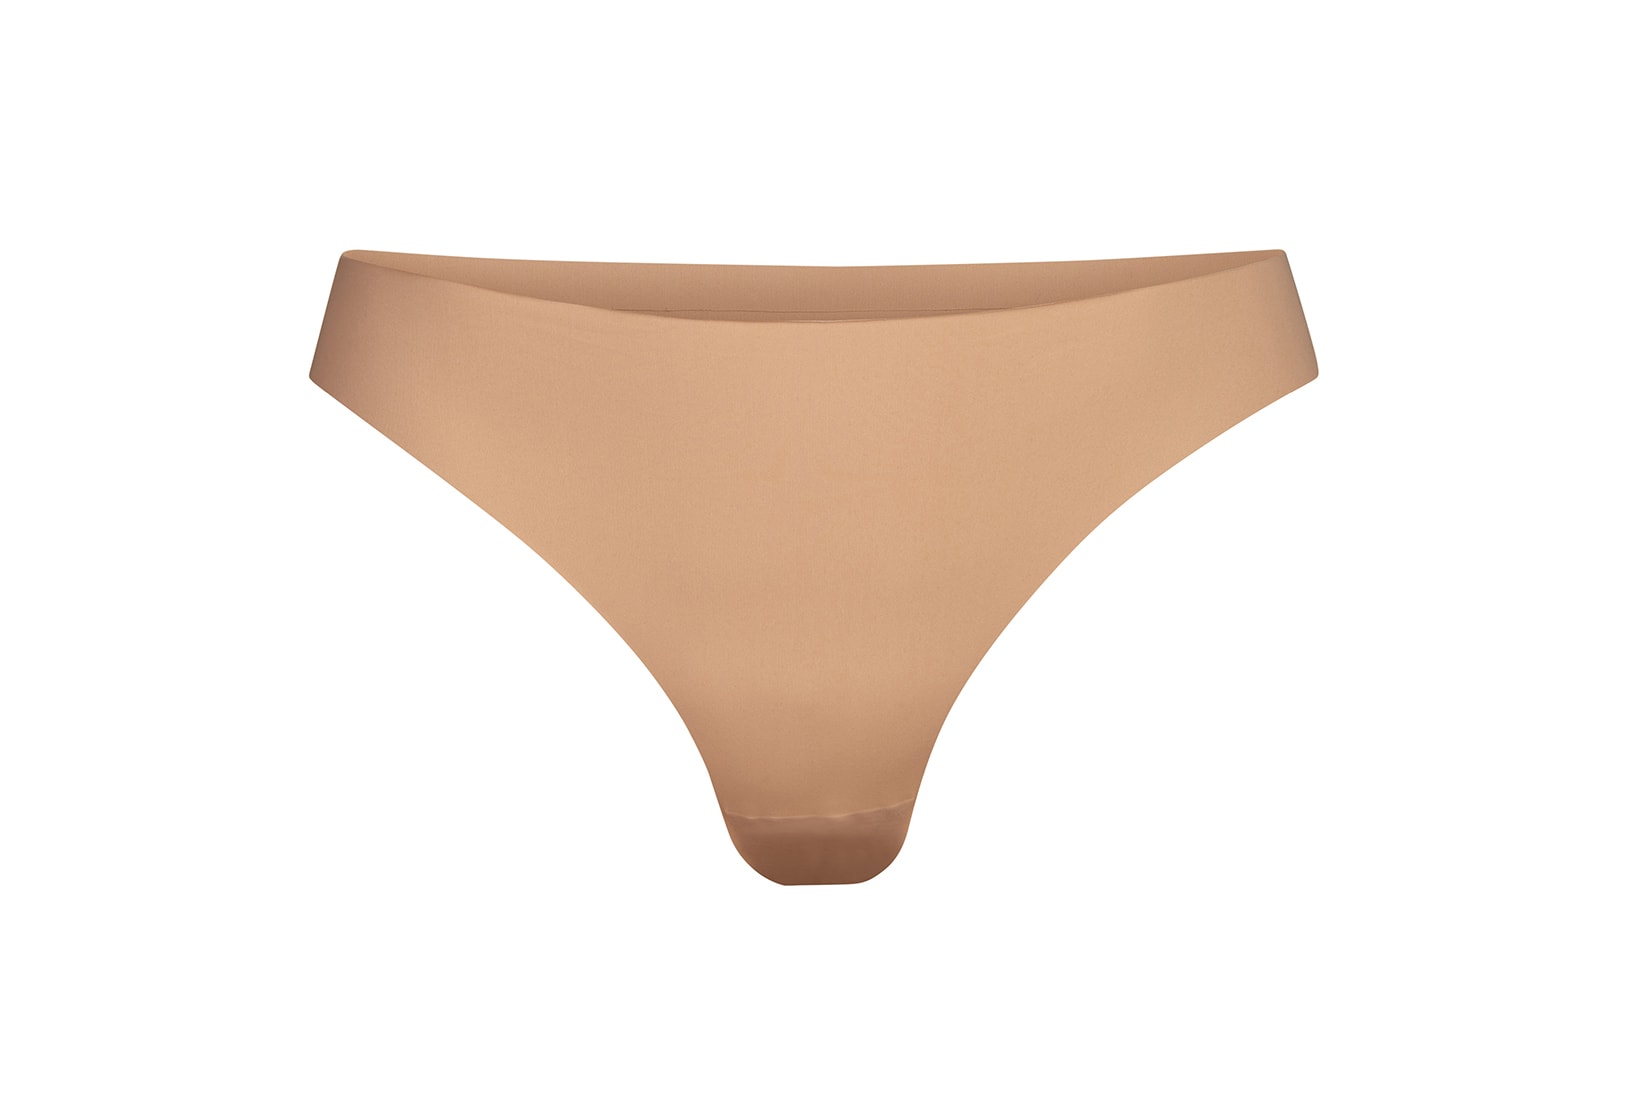 kim kardashian skims smooth essentials collection underwear shapewear tank top thong brief 